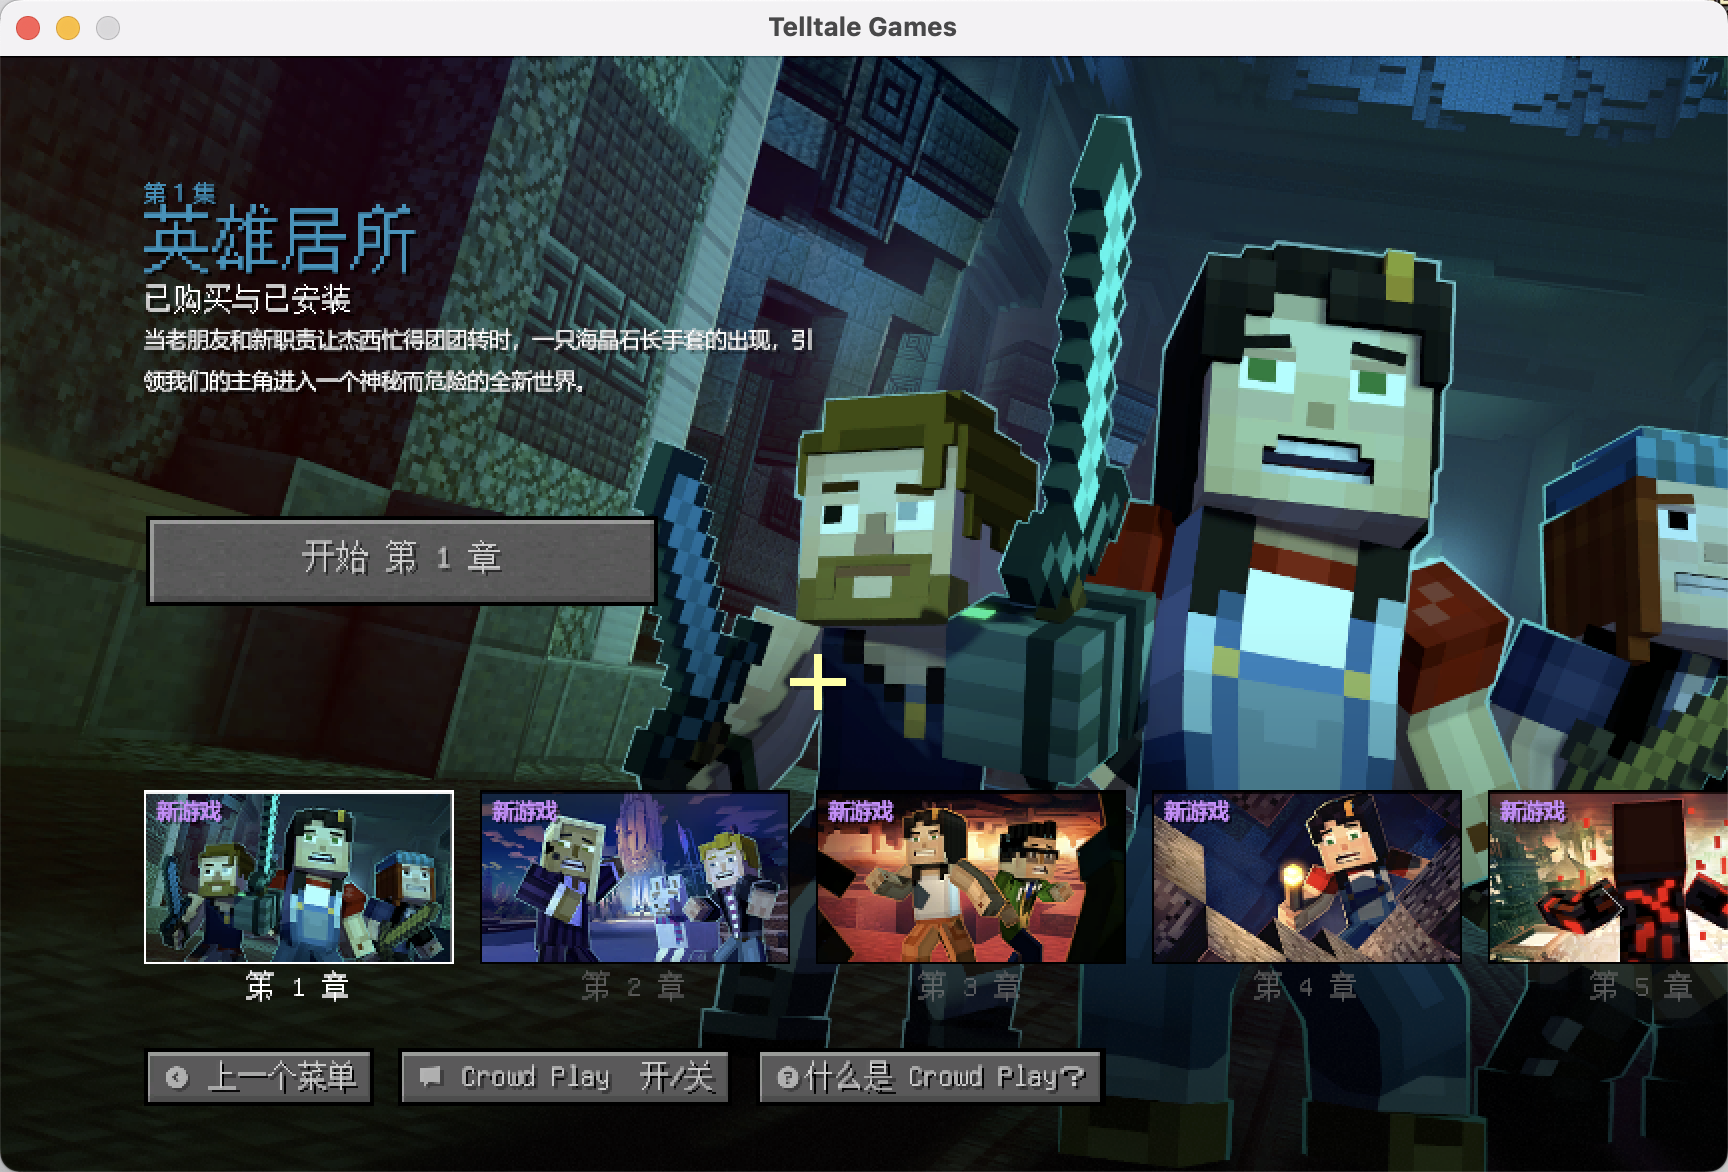 我的世界：故事模式第二季 for Mac v1.0 Minecraft: Story Mode - Season Two 中文移植版 苹果电脑